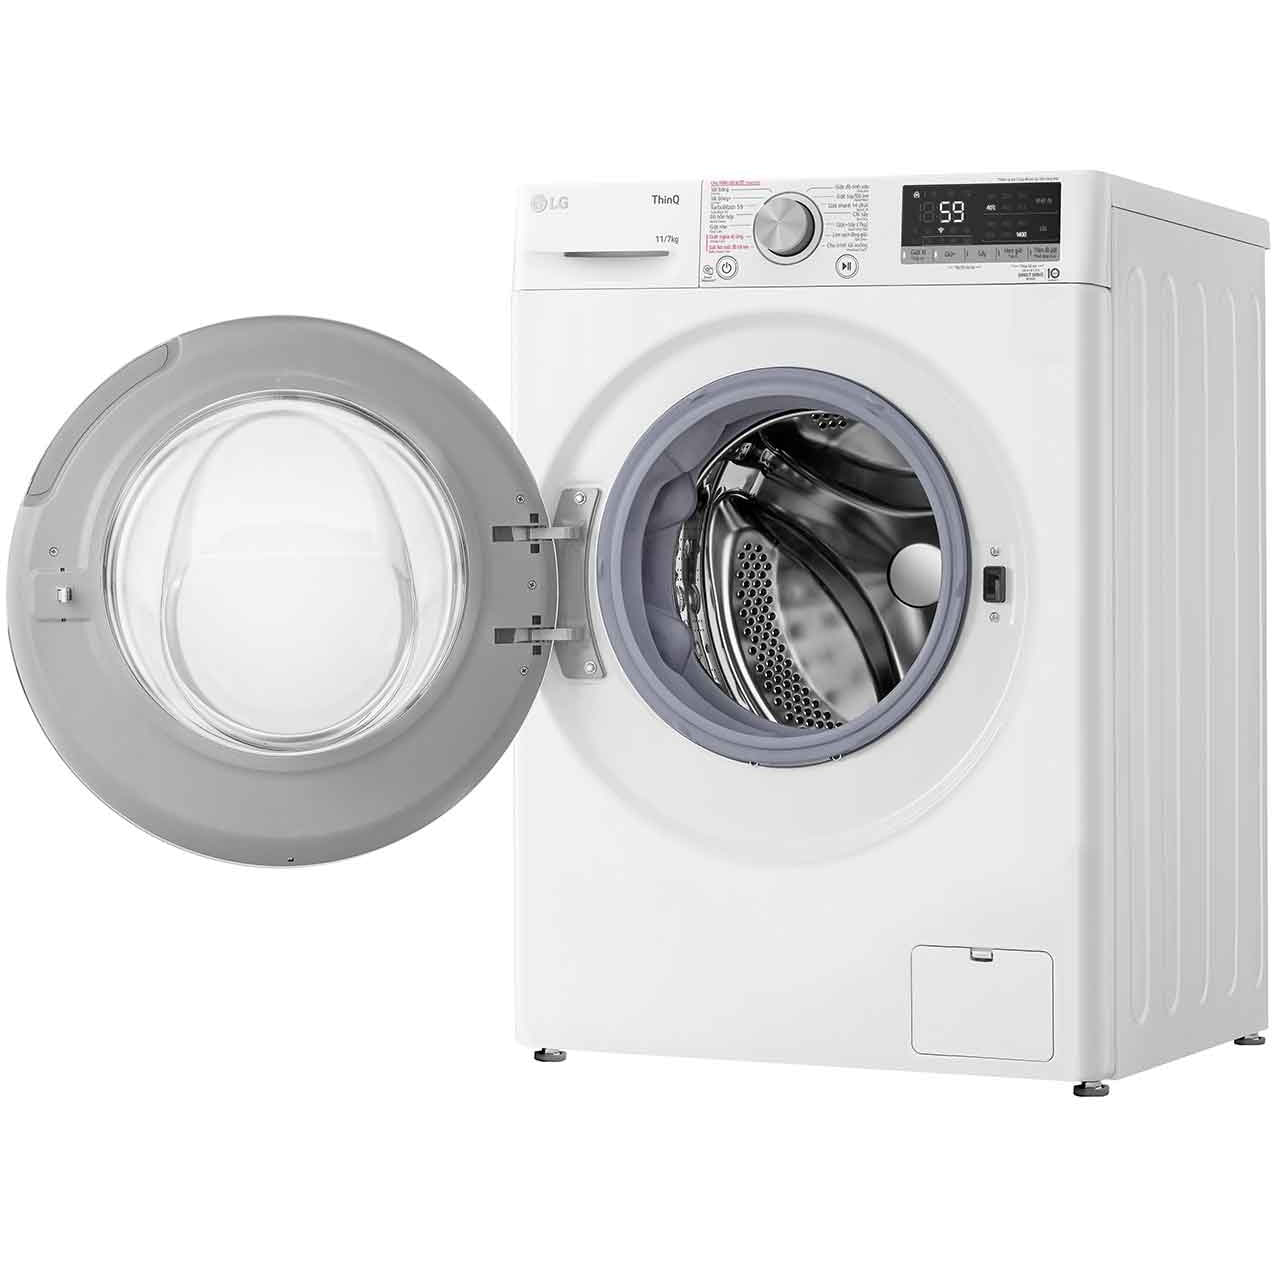 Máy giặt sấy LG Inverter 11/7 kg FV1411D4W - Chỉ giao HCM